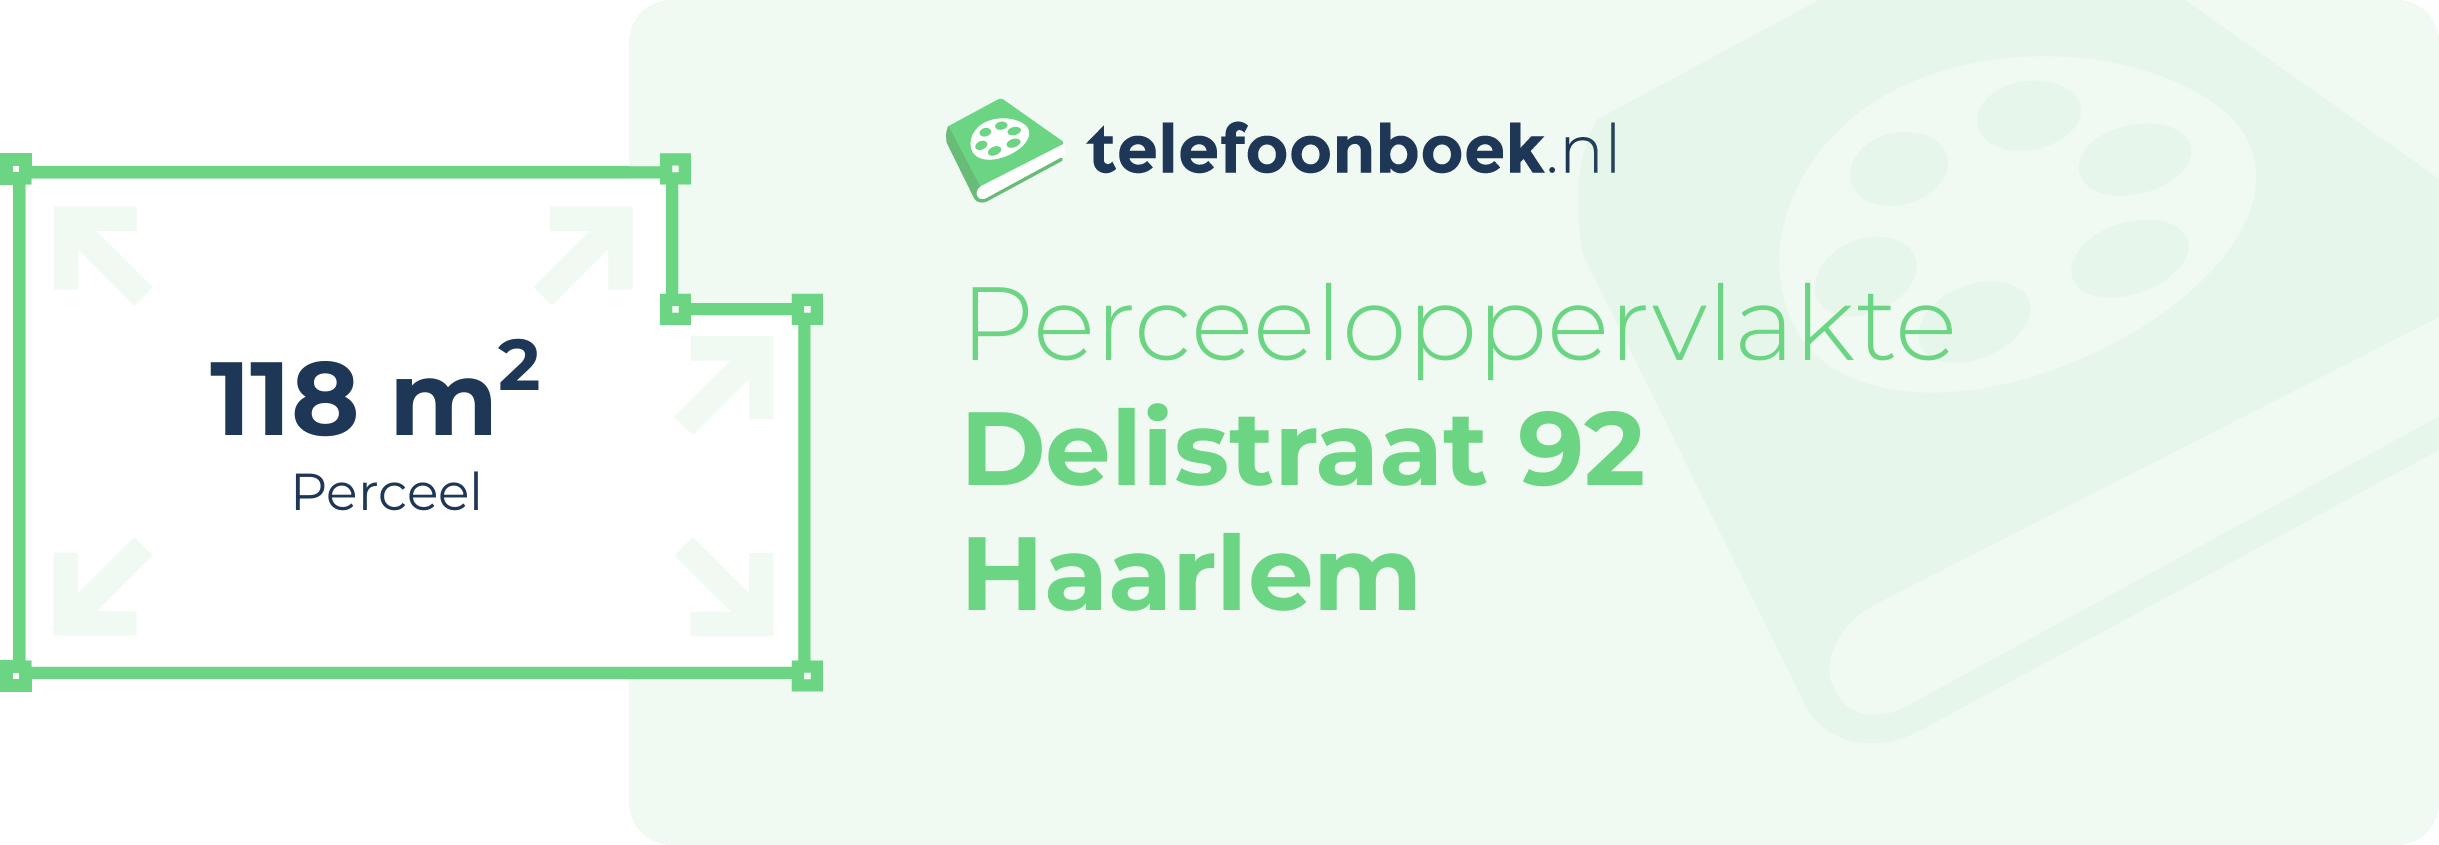 Perceeloppervlakte Delistraat 92 Haarlem